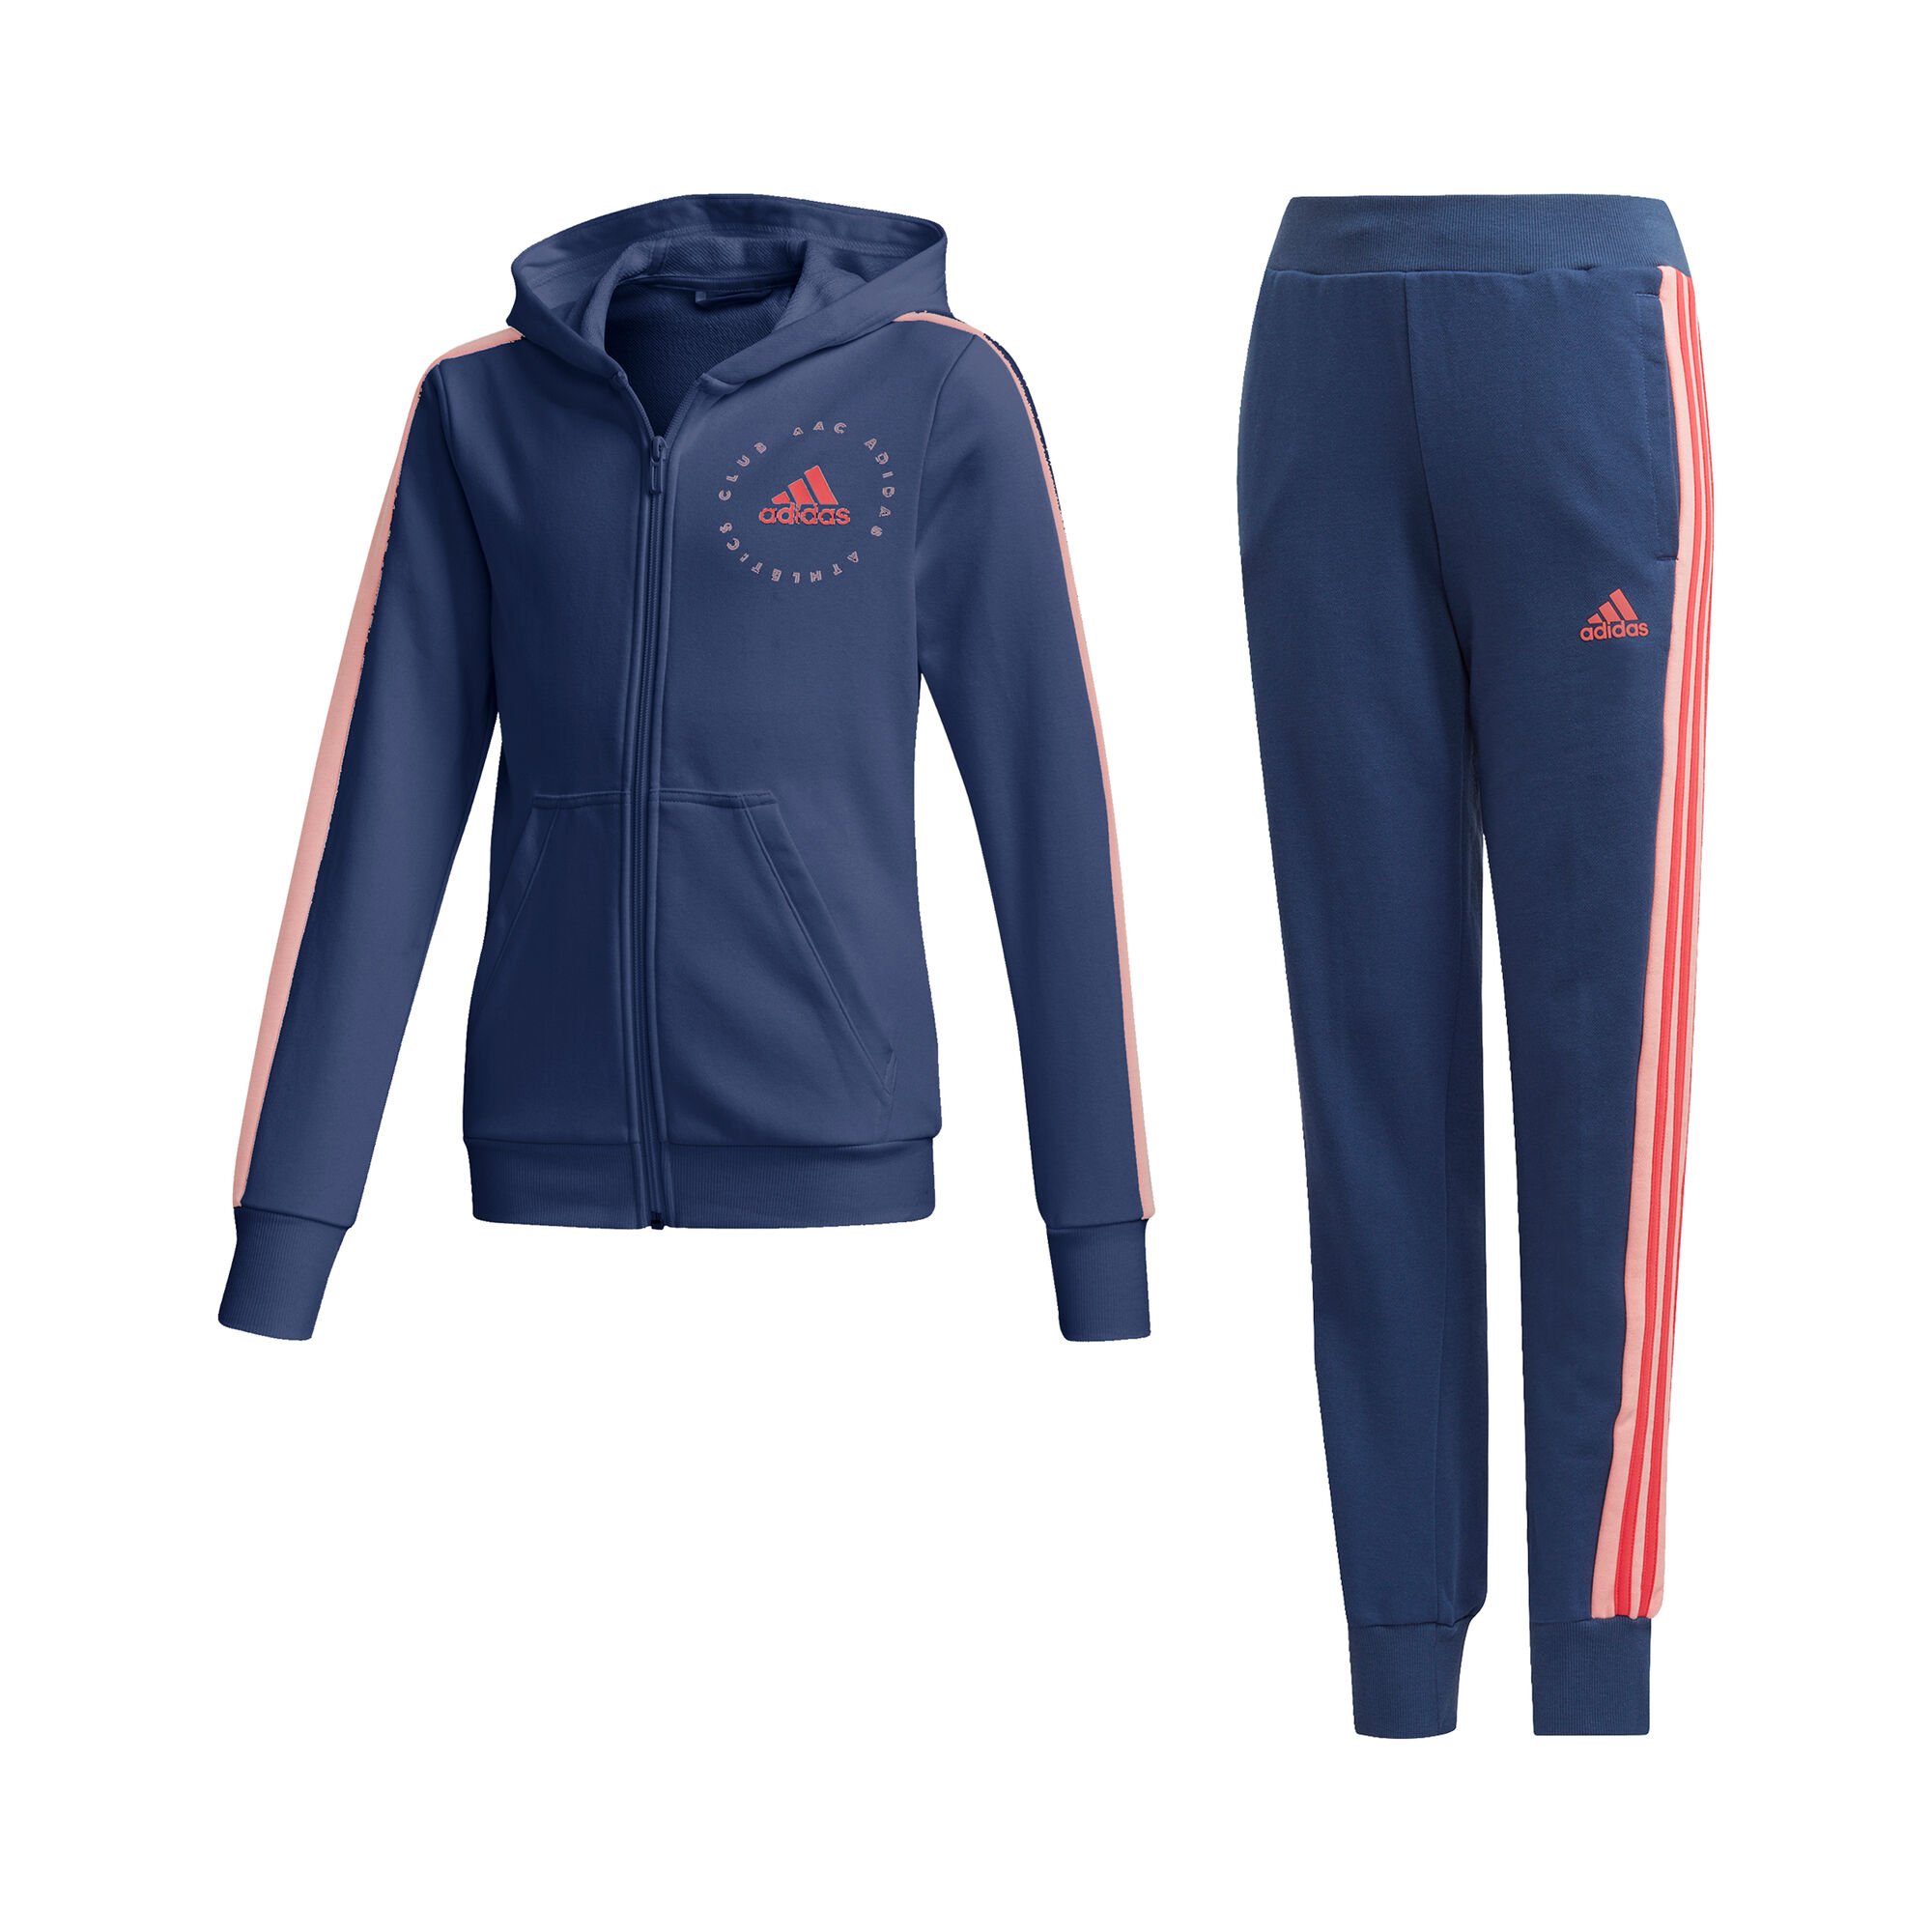 Doorbraak heel fijn Bloeien adidas Hooded Trainingspak Meisjes - Donkerblauw, Pink online kopen |  Tennis-Point